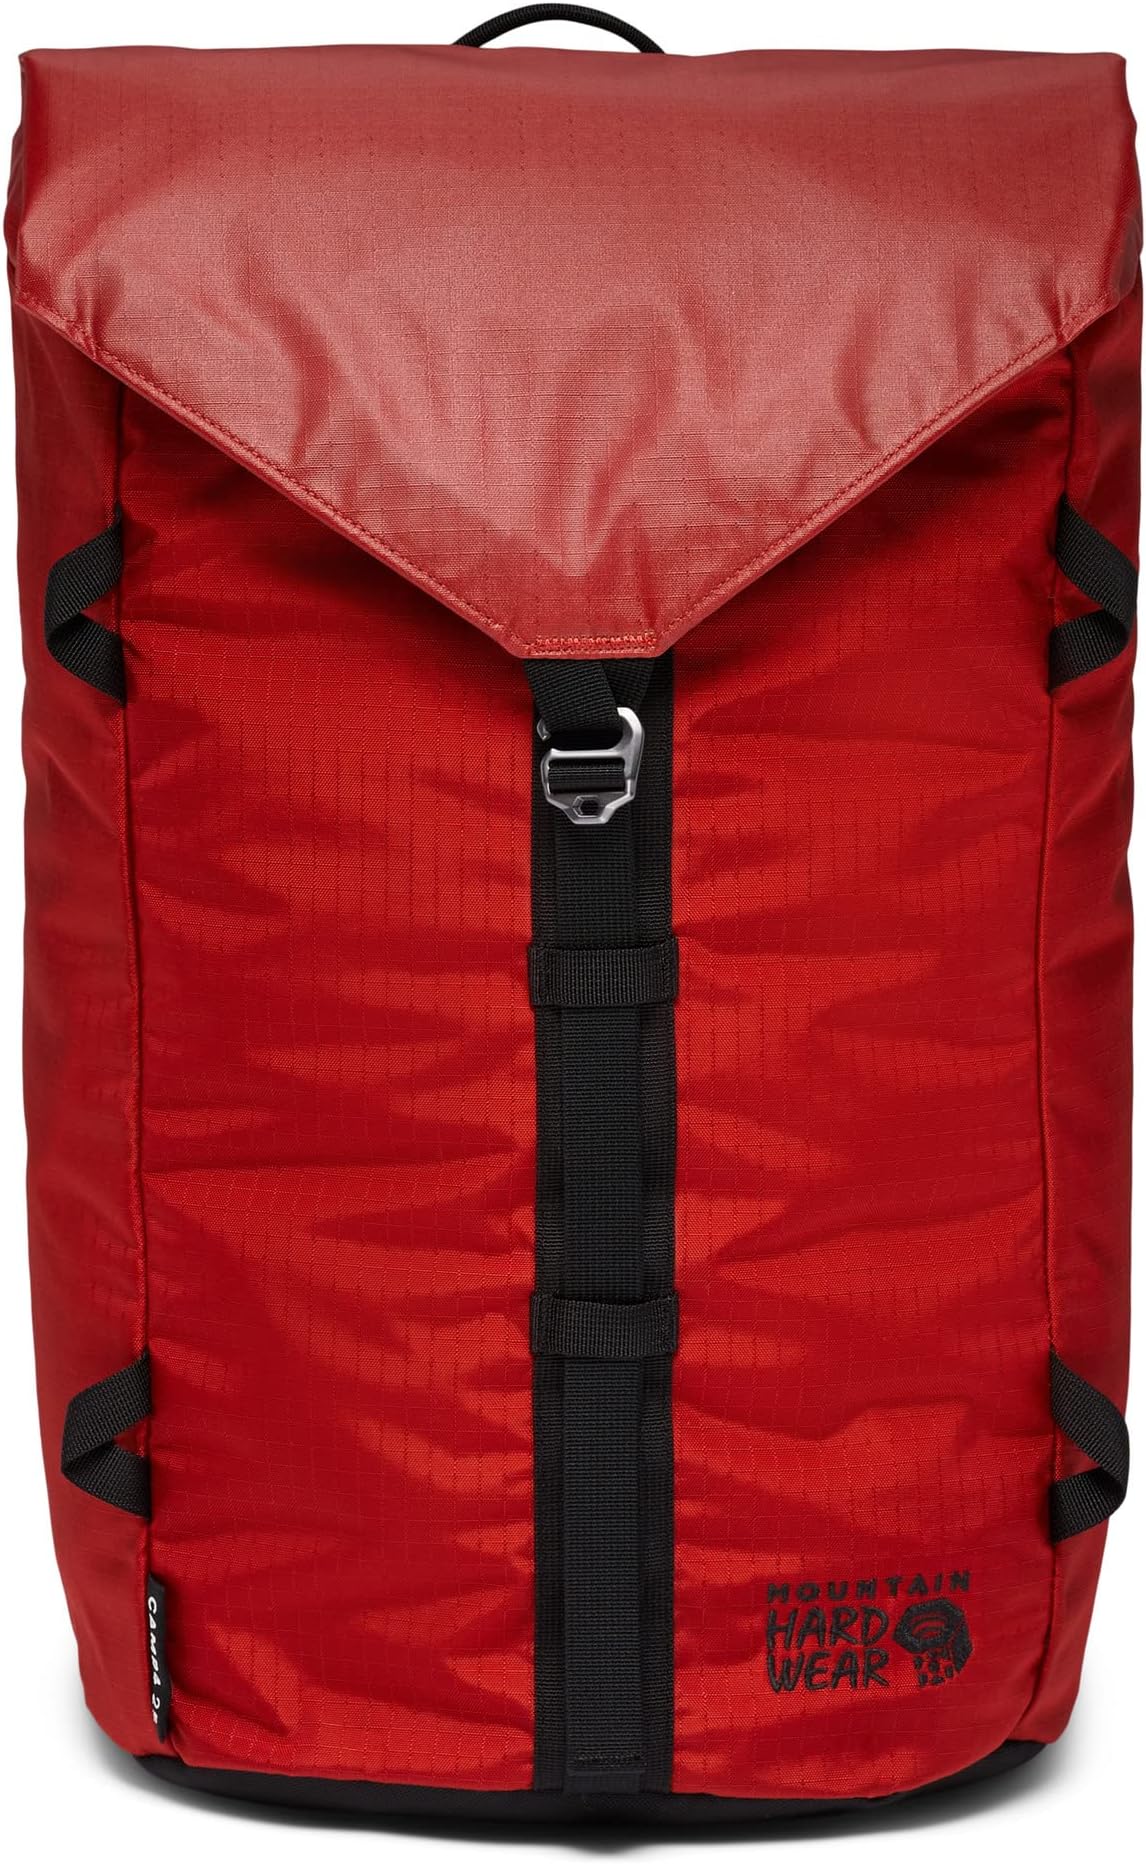 Рюкзак 25 L Camp 4 Backpack Mountain Hardwear, цвет Desert Red